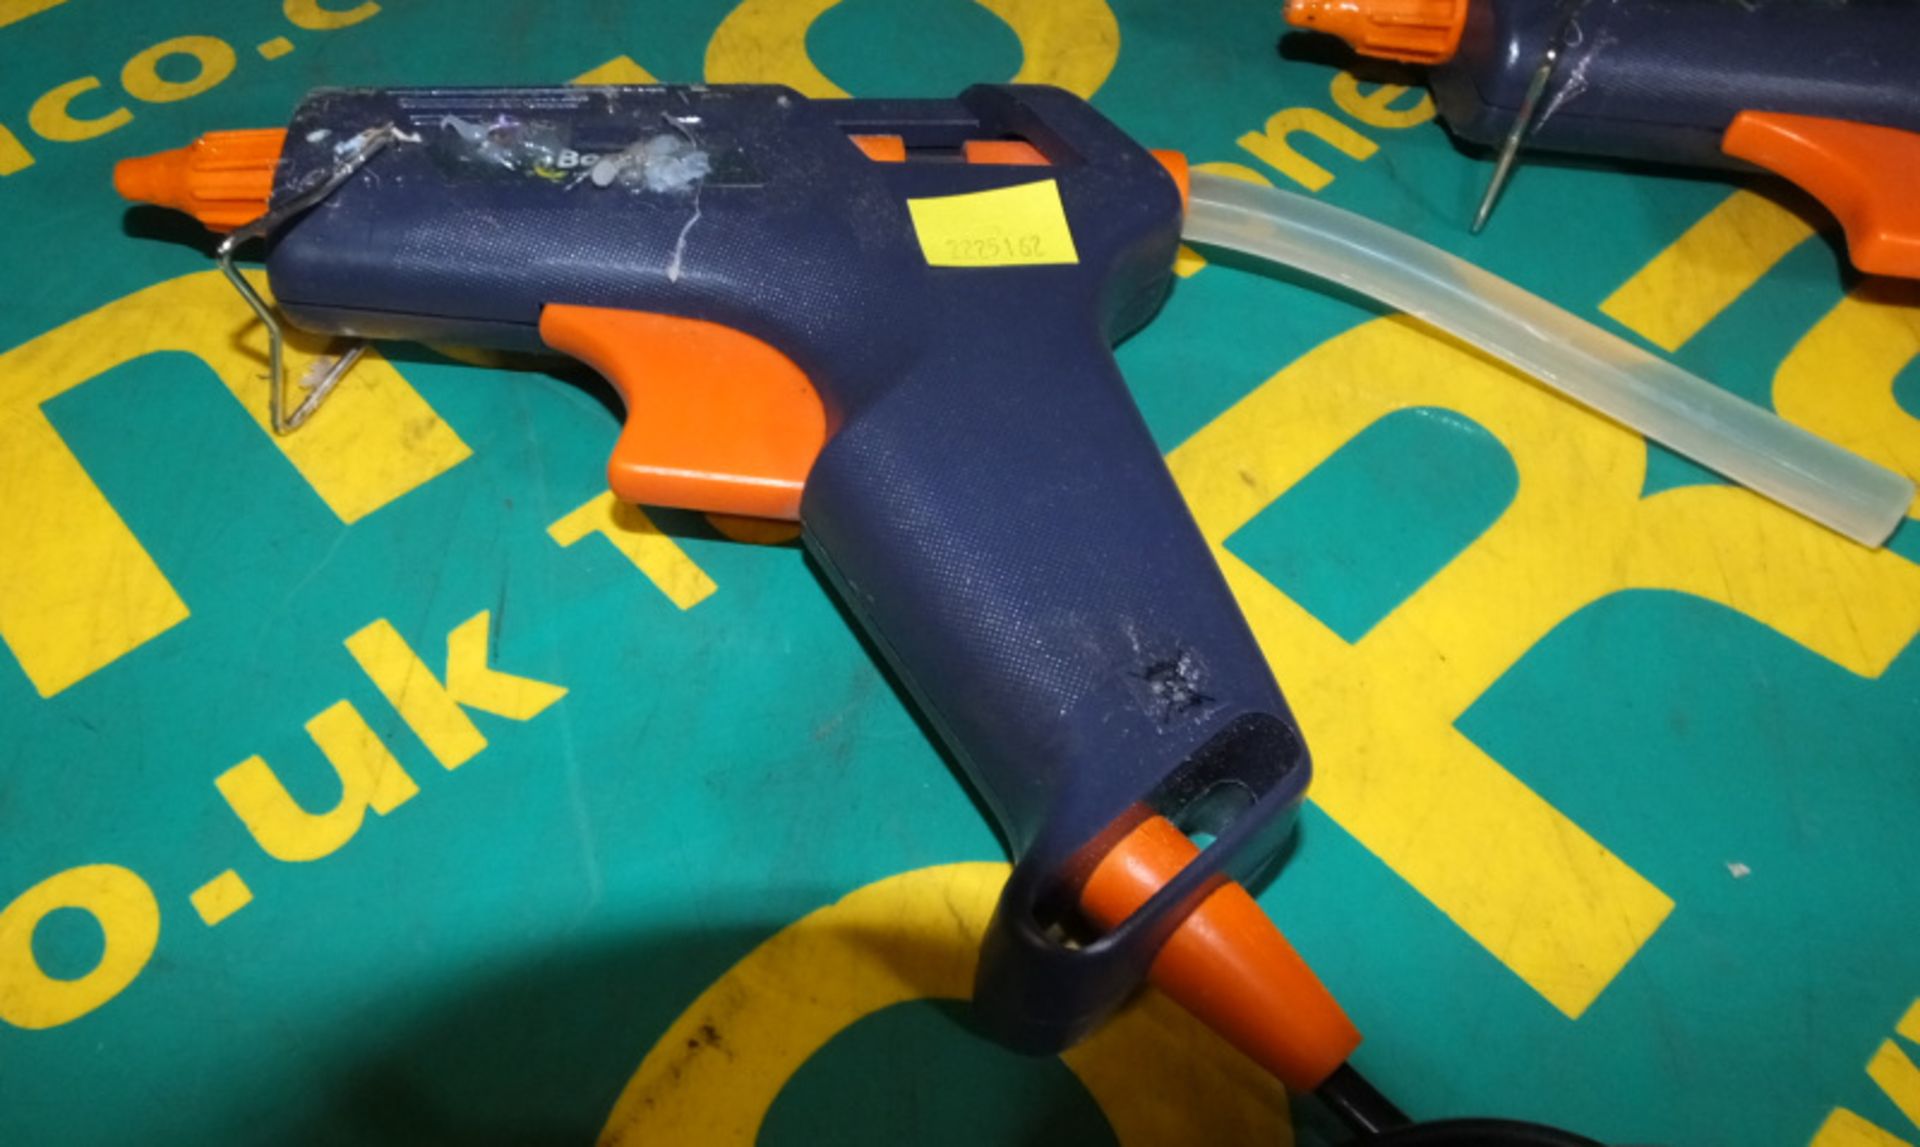 4x Bostik Trigger Action Glue Gun 230V - Image 2 of 2